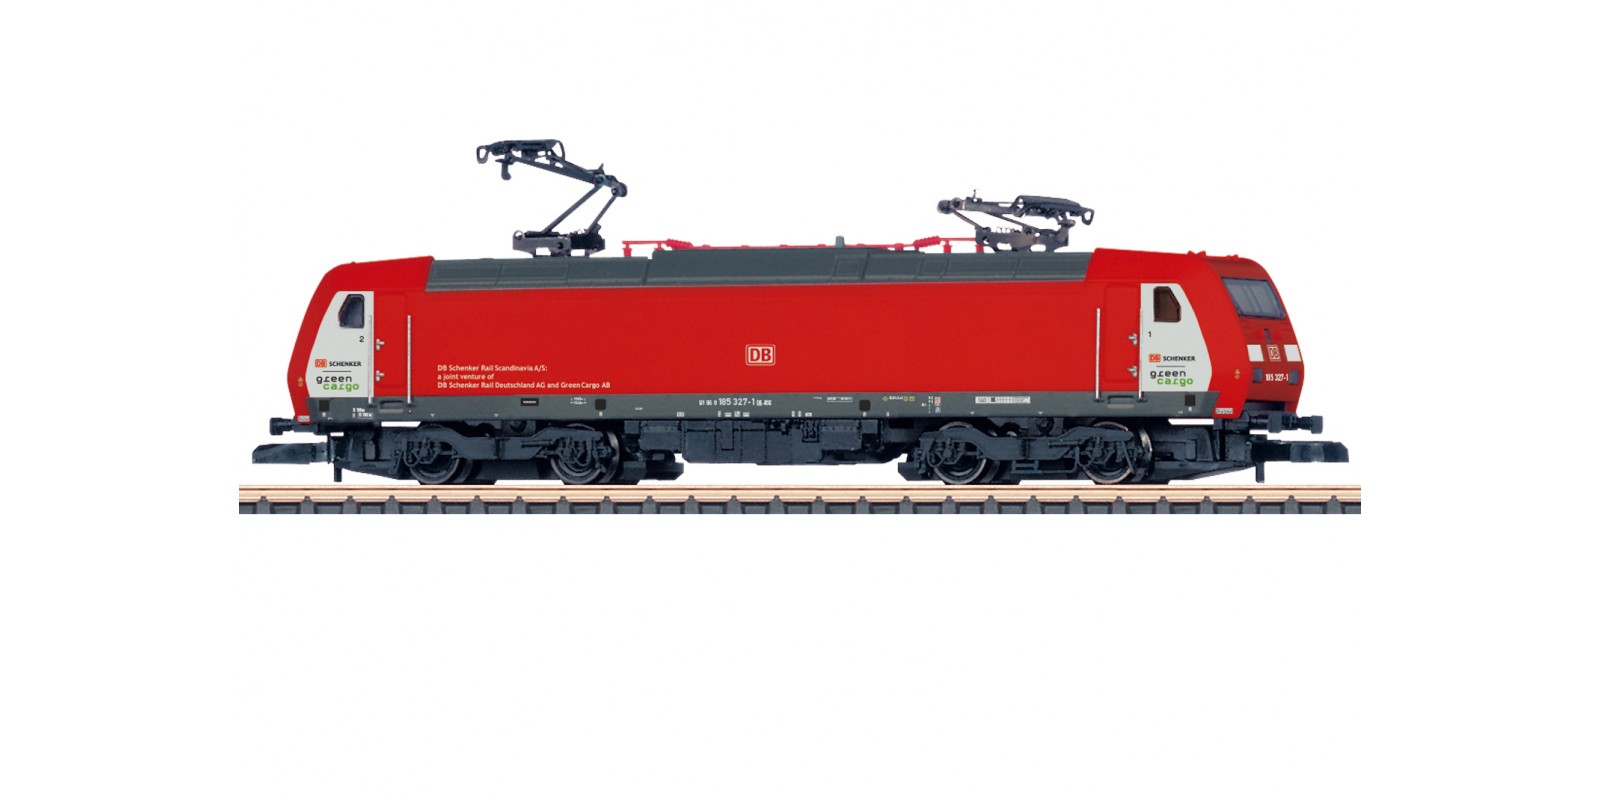 88486 Class 185.2 Electric Locomotive